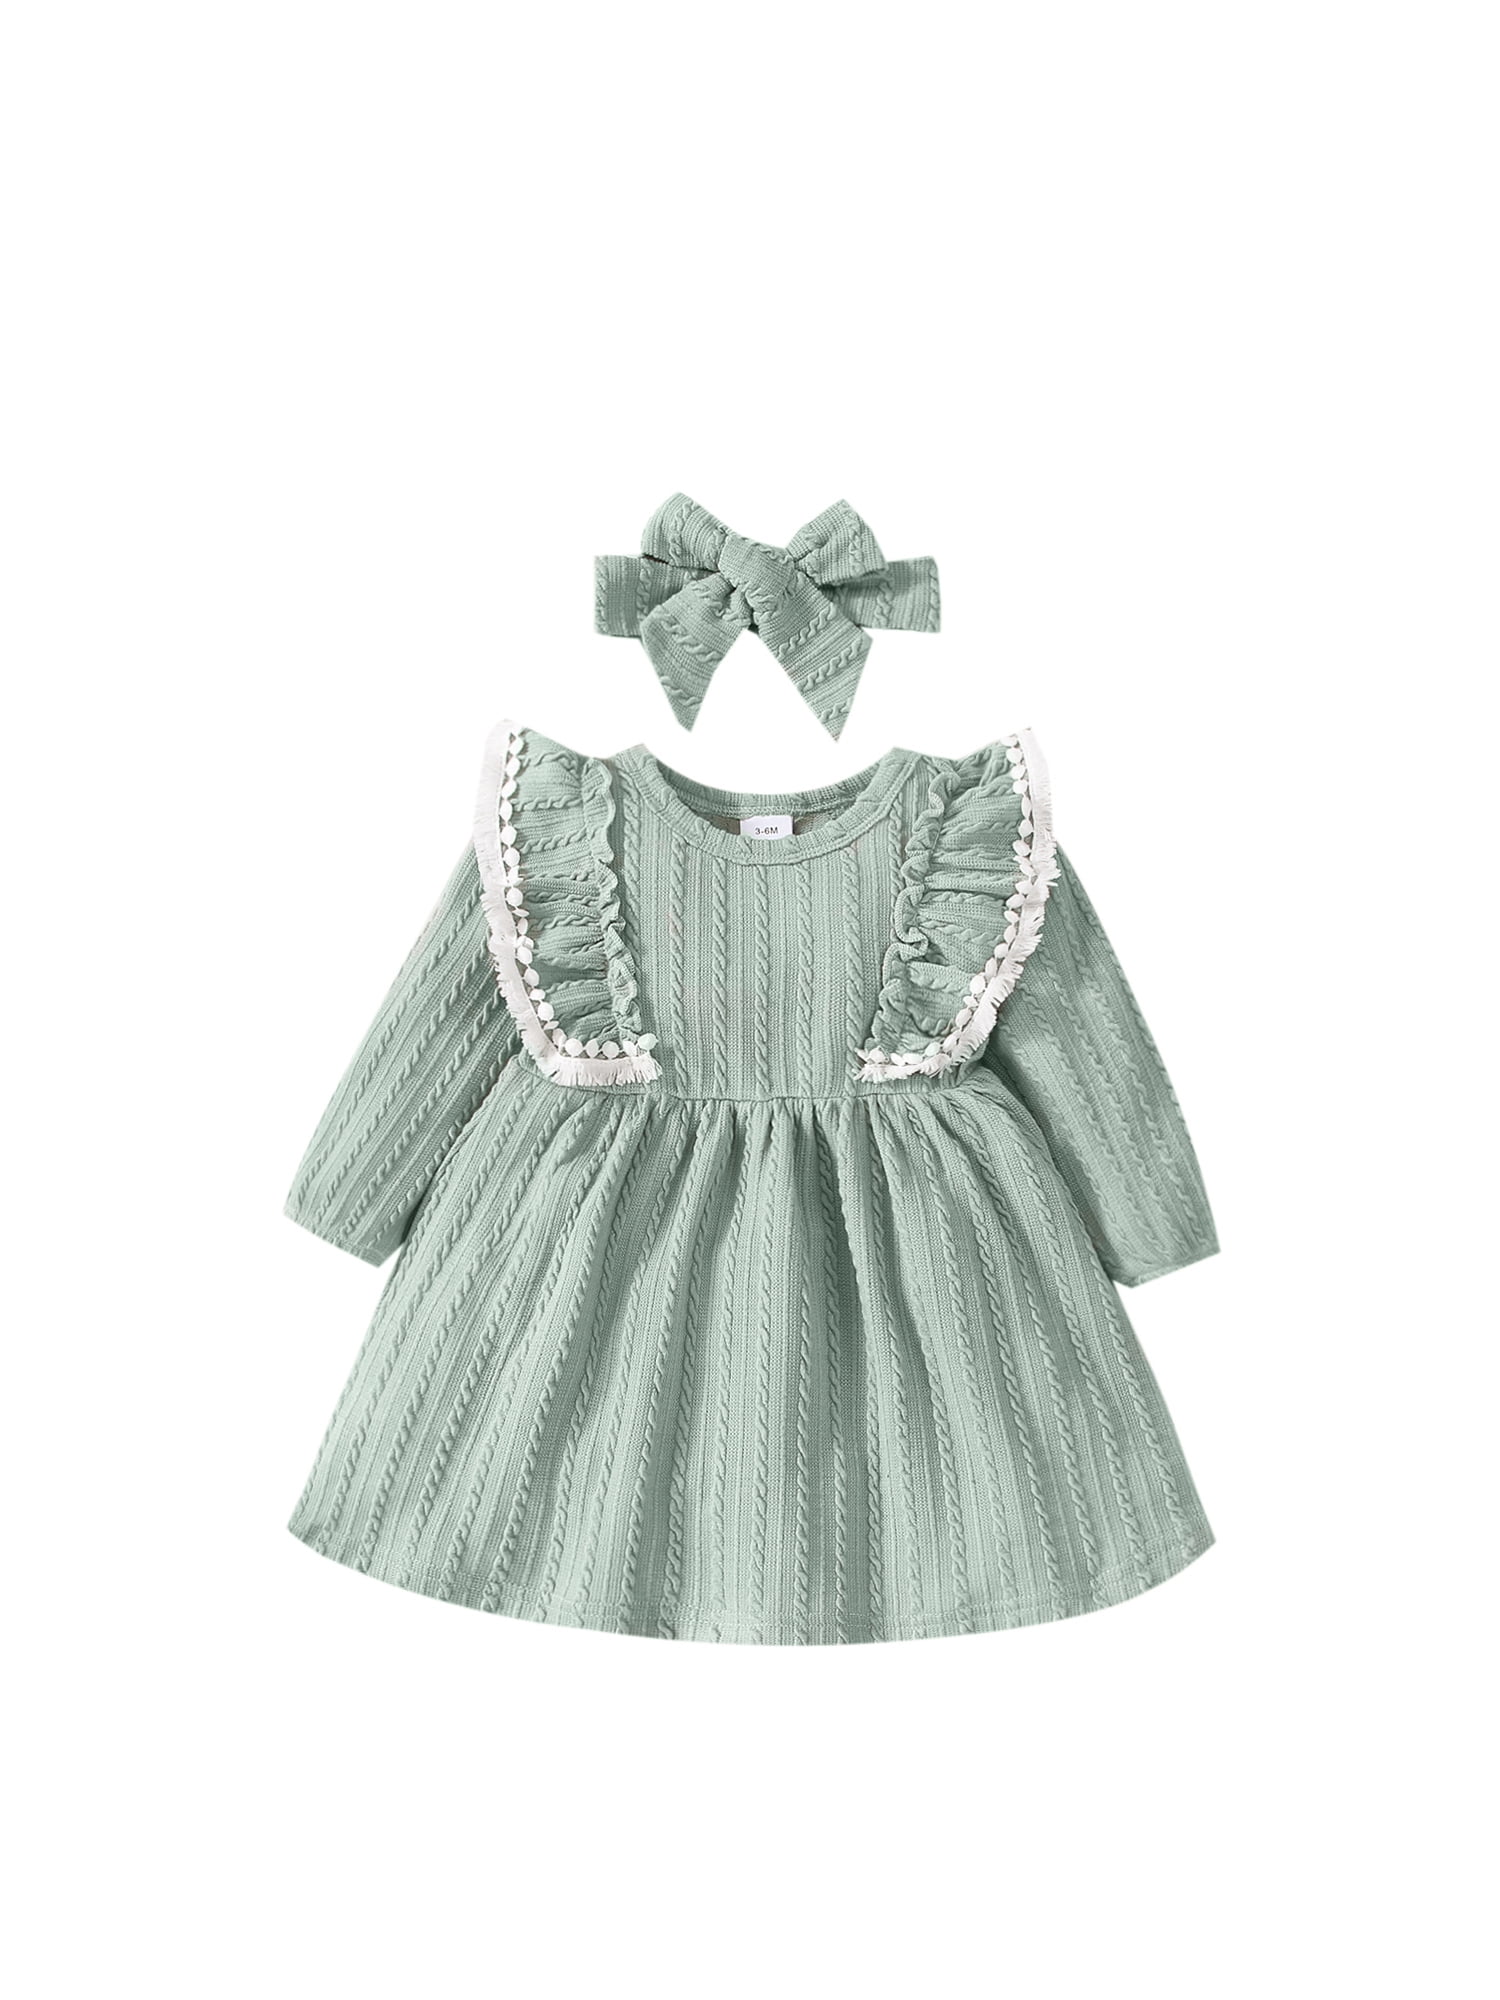 Girls Winter Dress,Kaicran Long Sleeve Ruffles Solid Patchwork Dress Princess Dress for Kids 6M-4T 